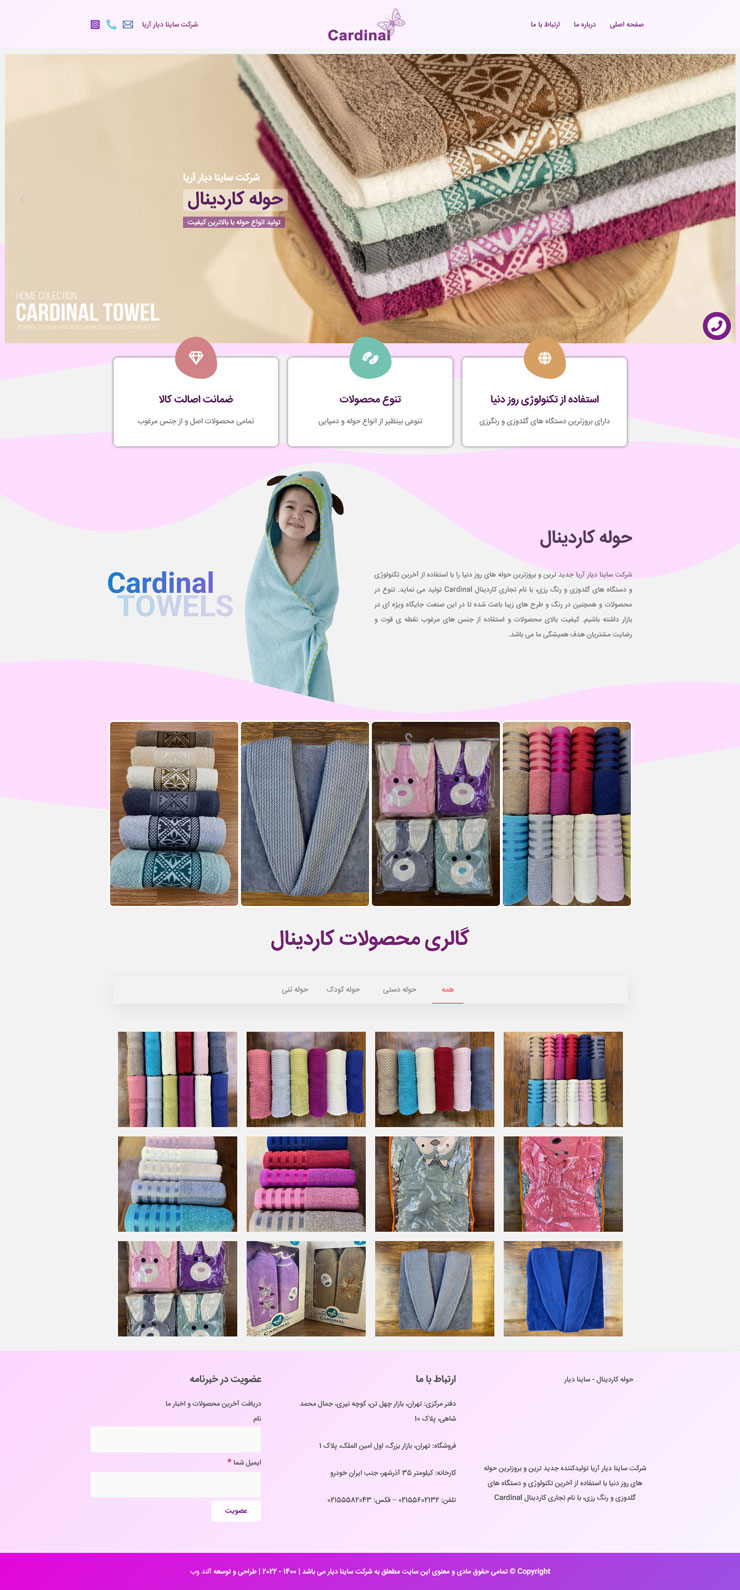 طراحی سایت شرکتی حوله کاردینال